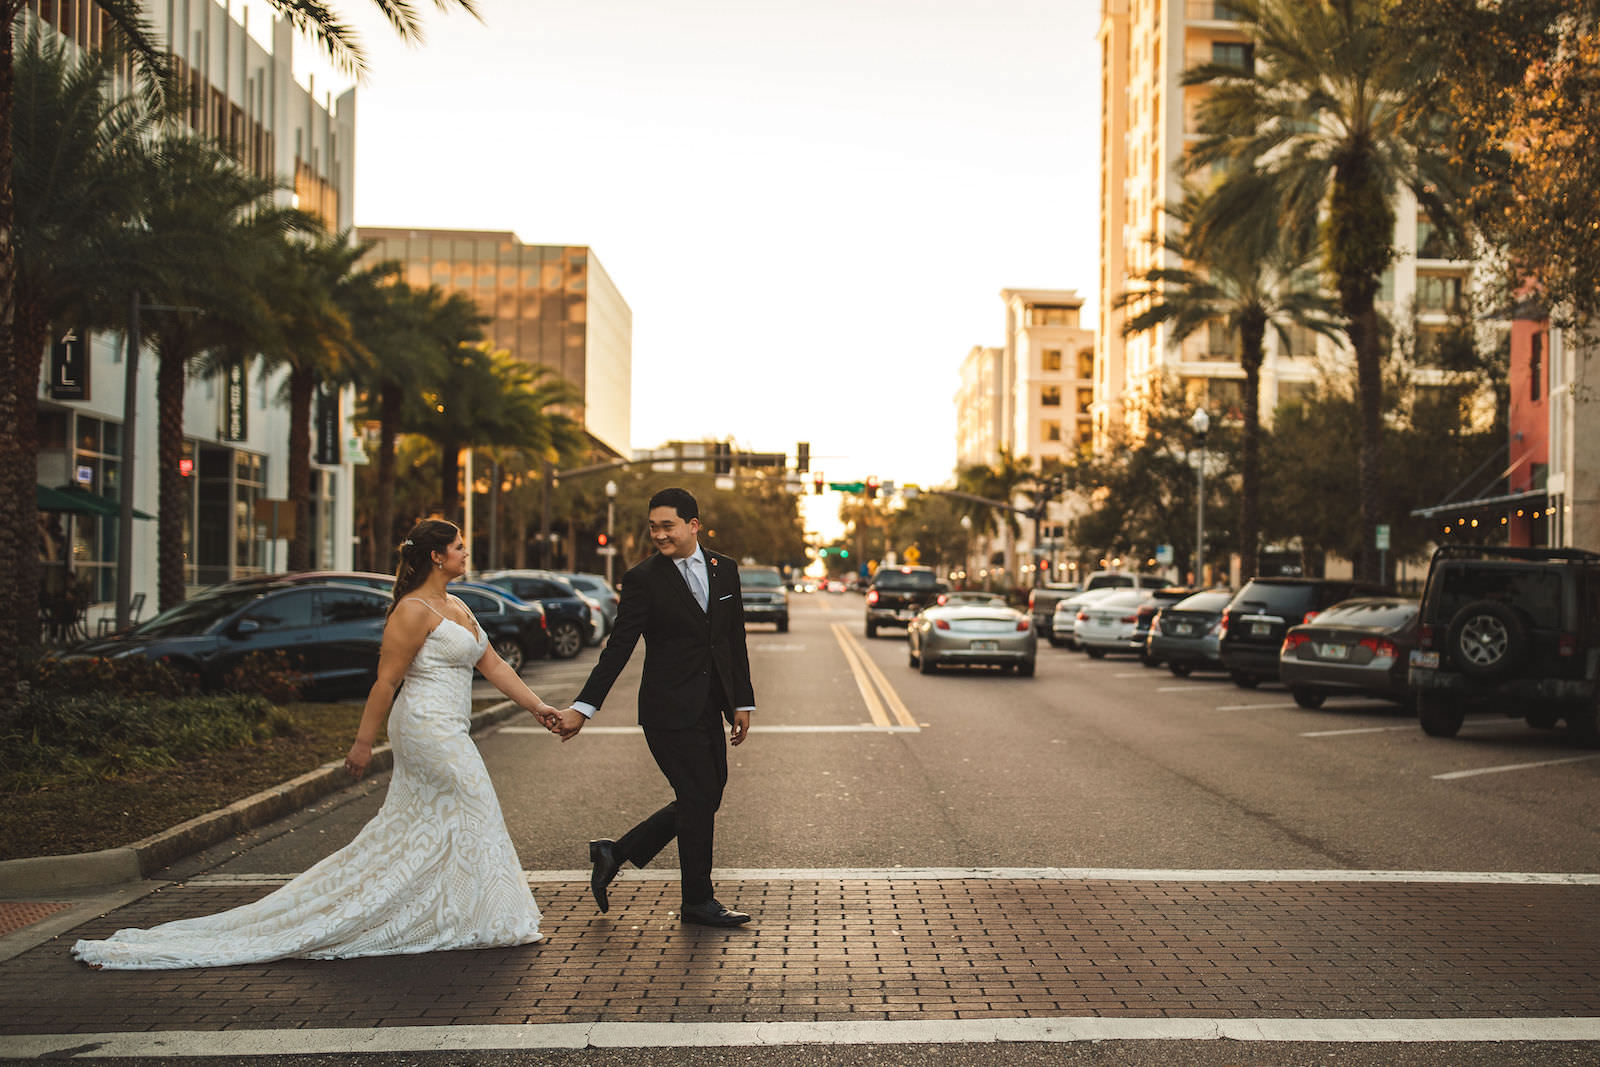 Tampa Bride and Groom Crossing Street in St. Petersburg